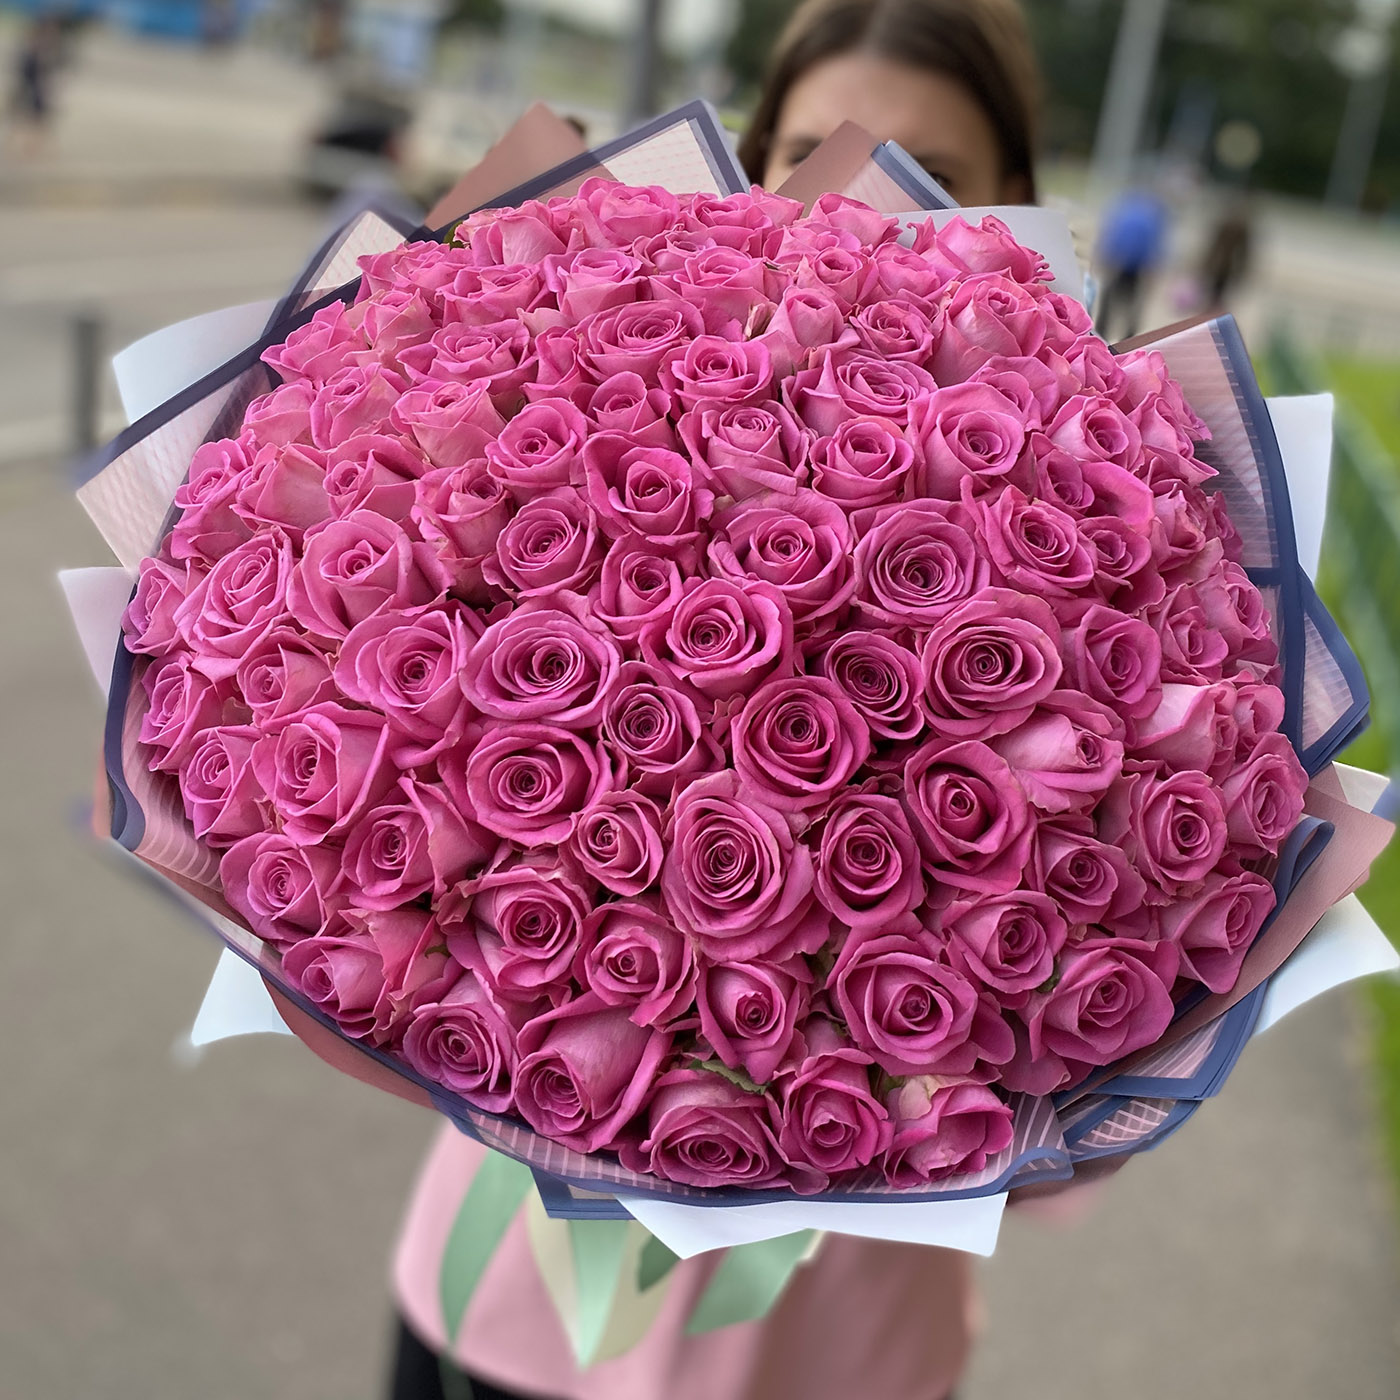 Купить подешевле цветы 101 роза купить цветы алексеевская